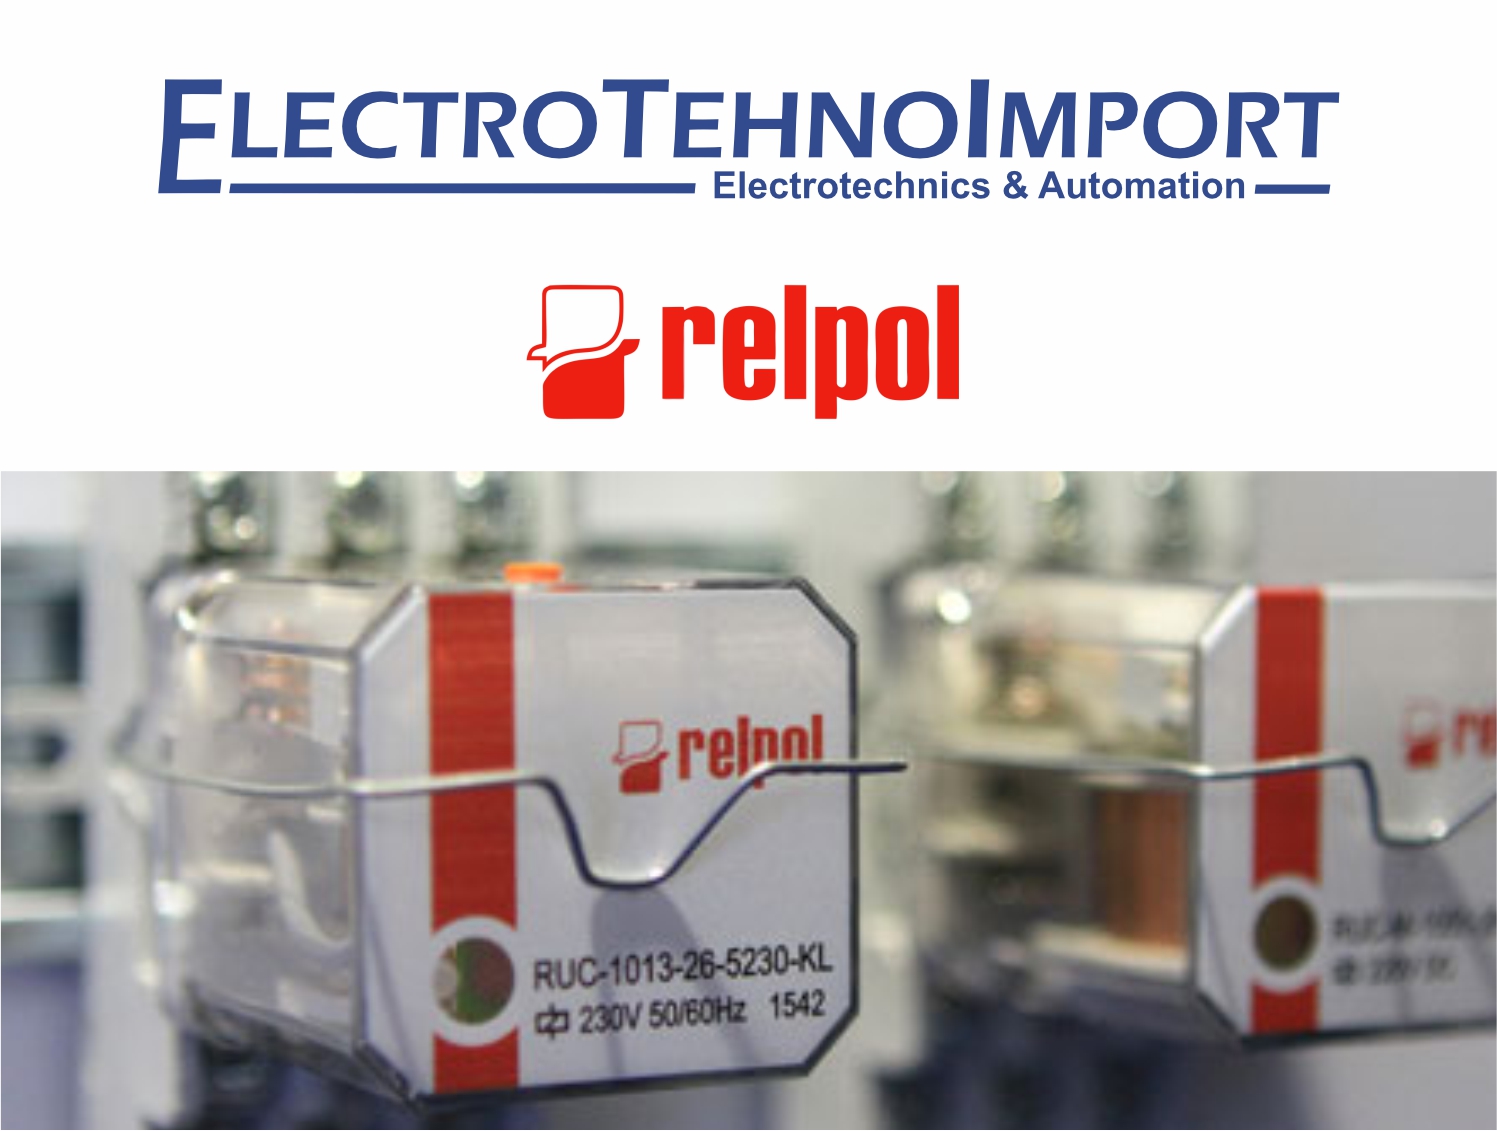 Electrotehnoimport SRL este distribuitorul exclusiv în Republica Moldova pentru produsele Relpol